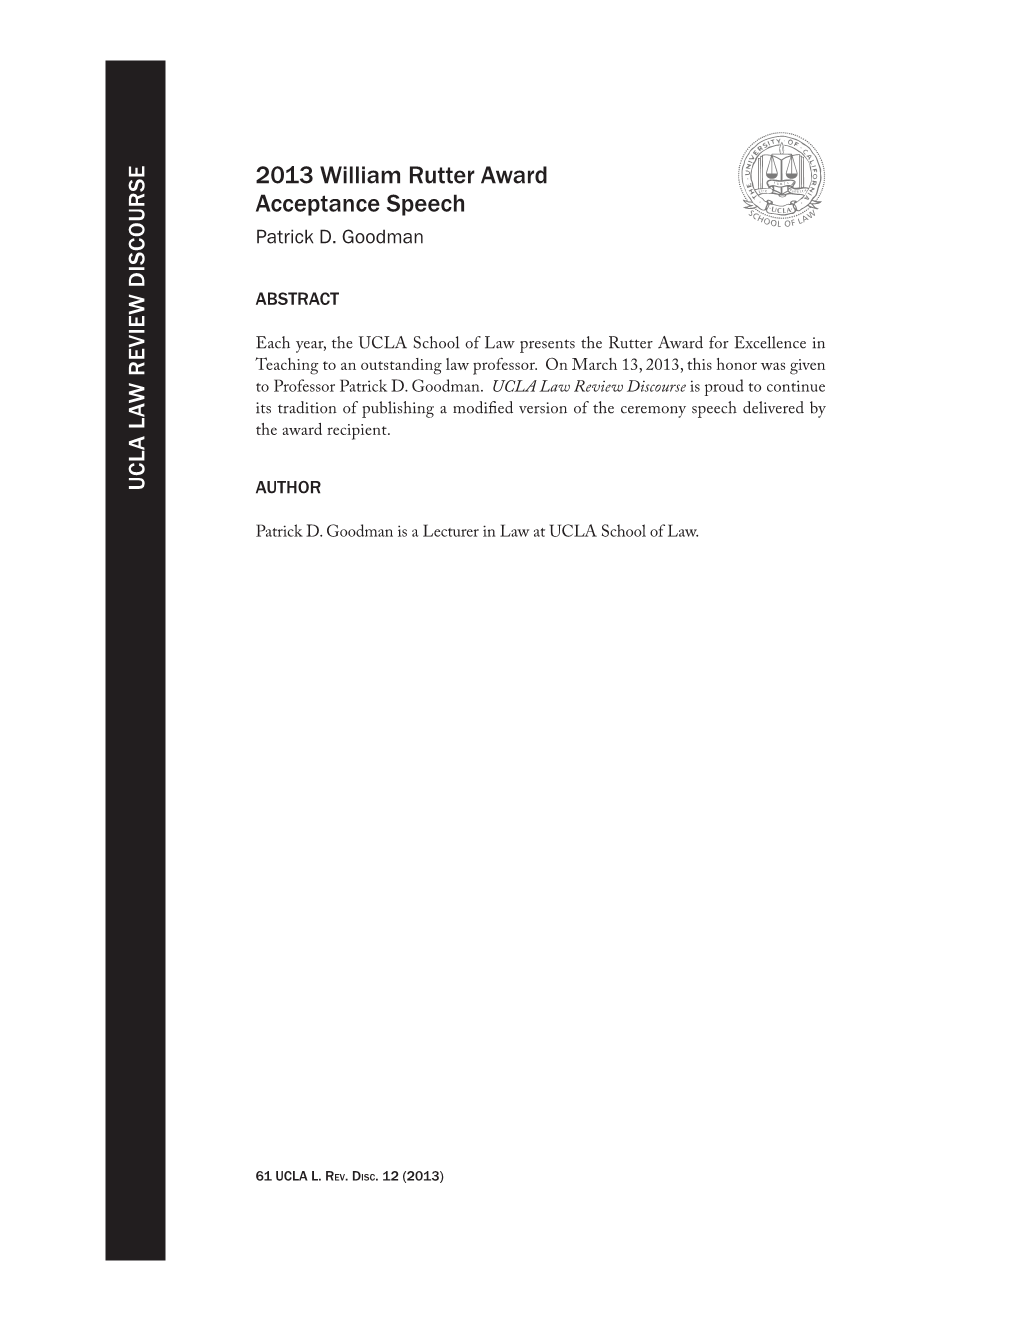 2013 William Rutter Award Acceptance Speech Patrick D